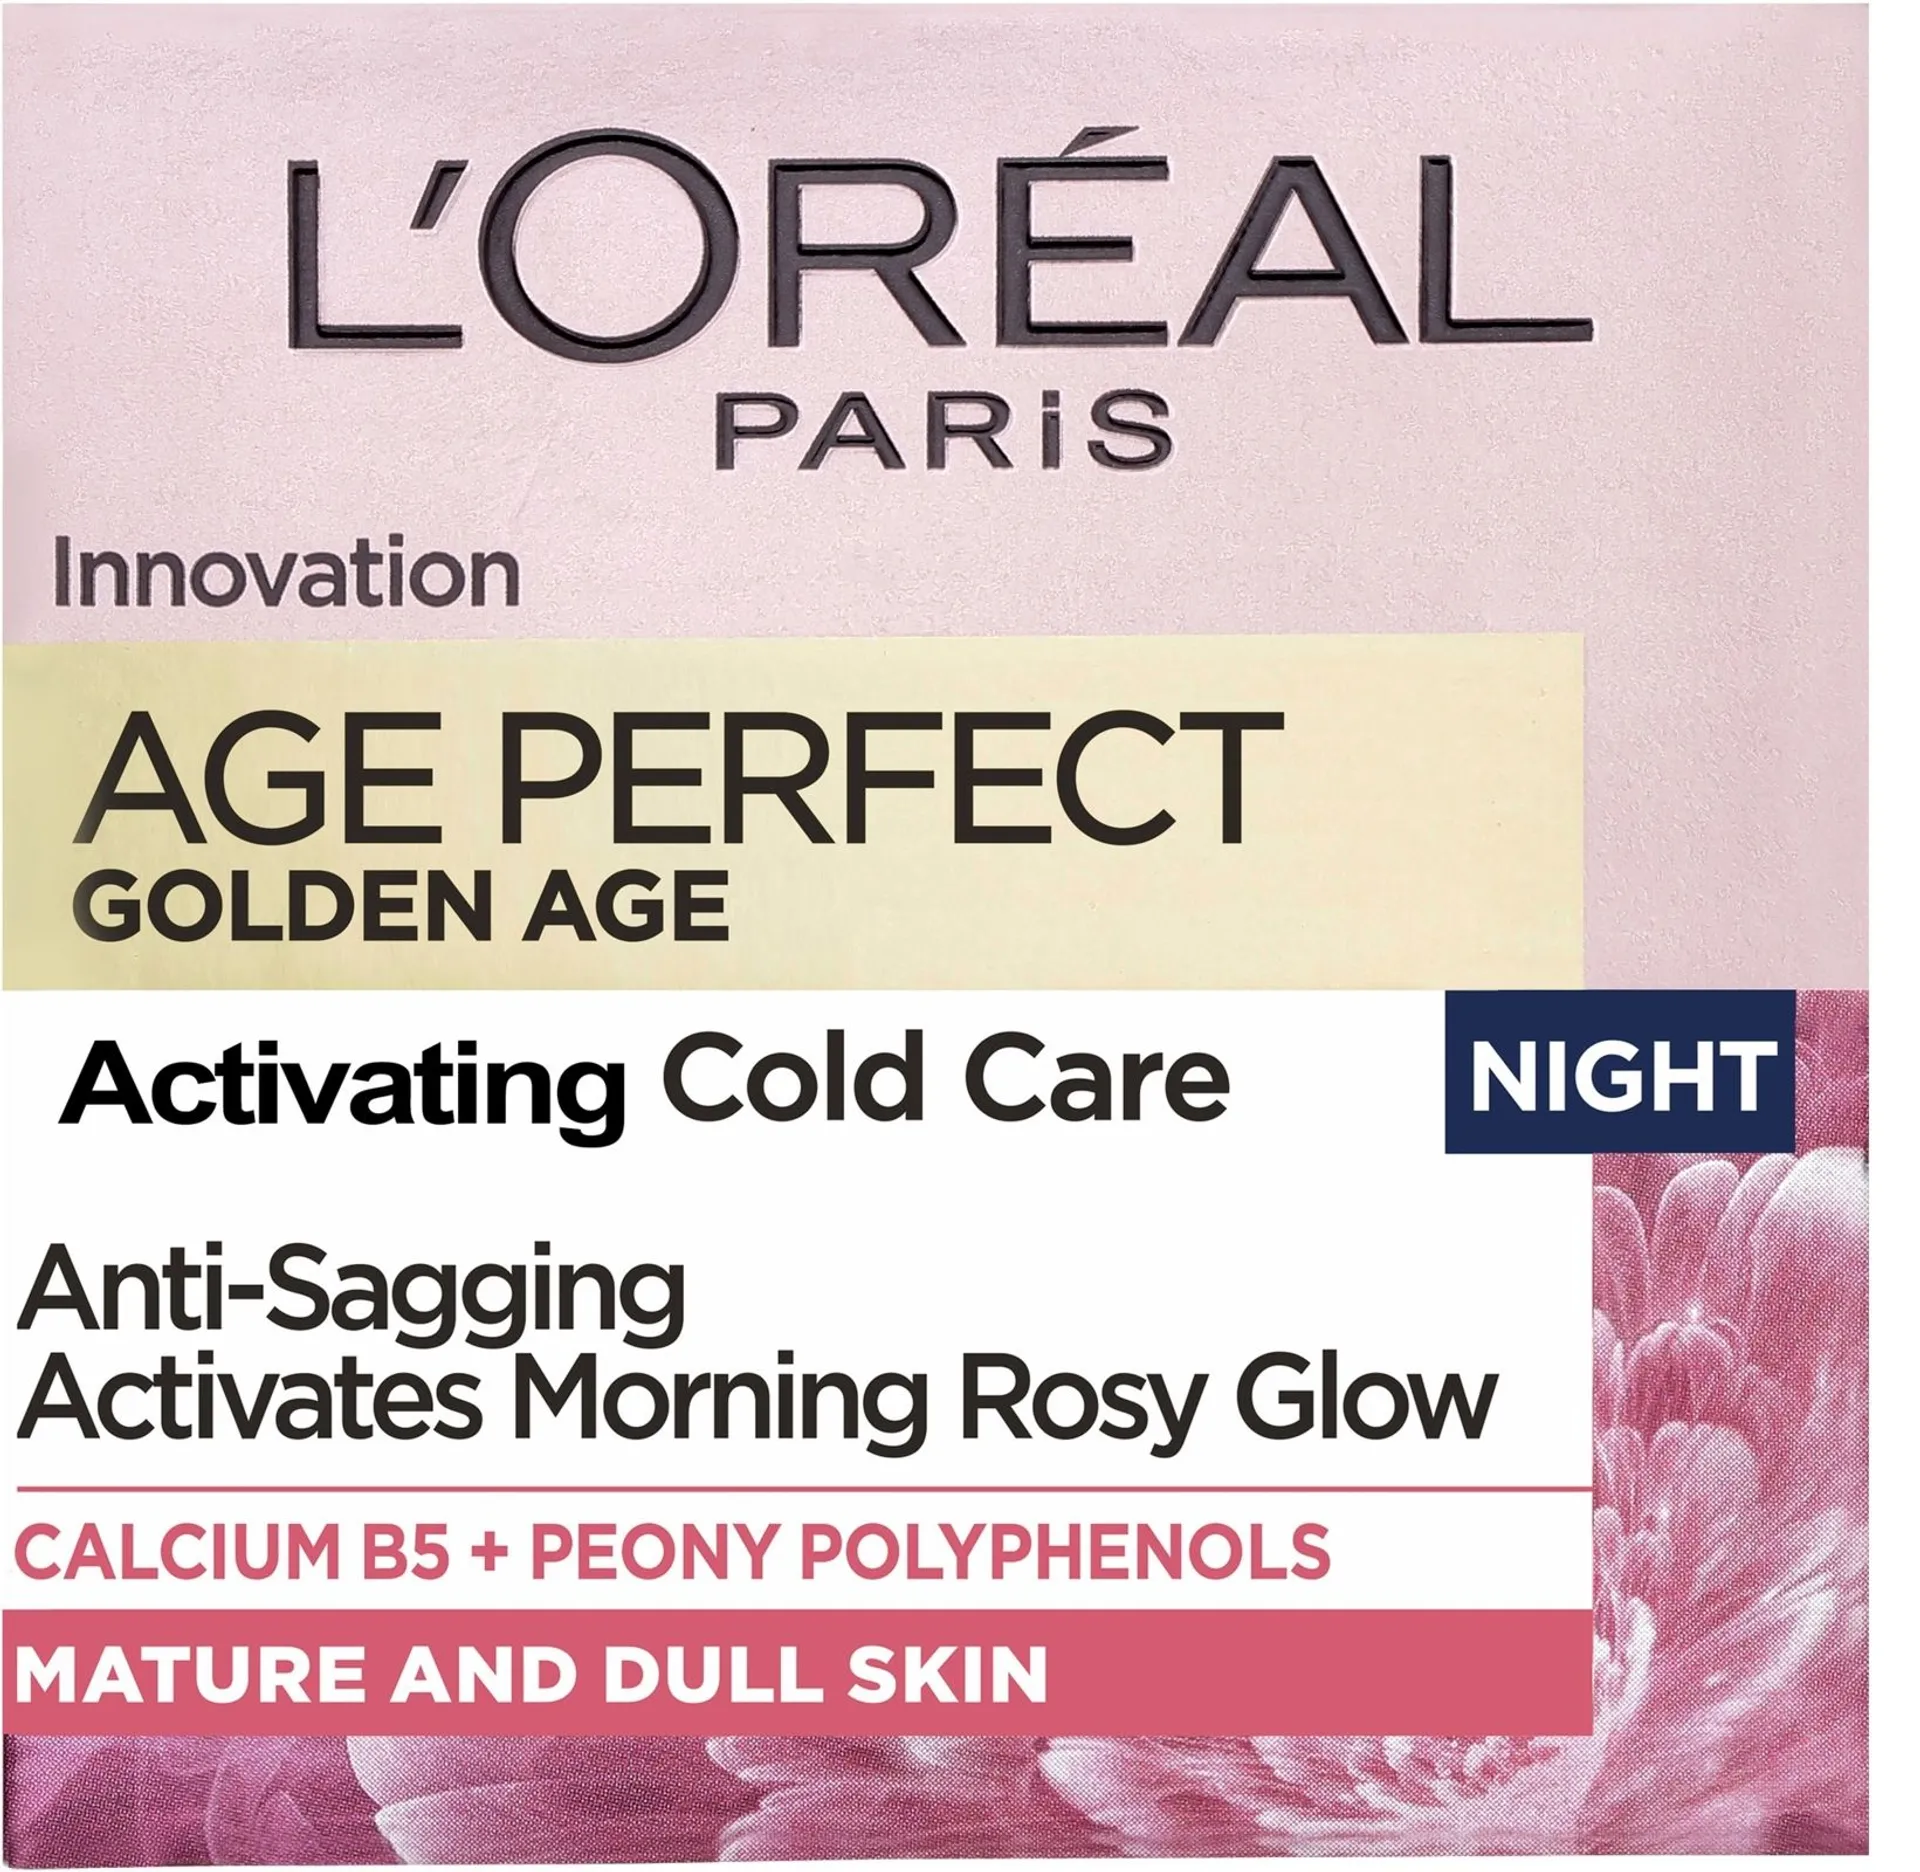 L'Oréal Paris Age Perfect Golden Age Night vahvistava ja kaunistava yövoide 50ml - 3